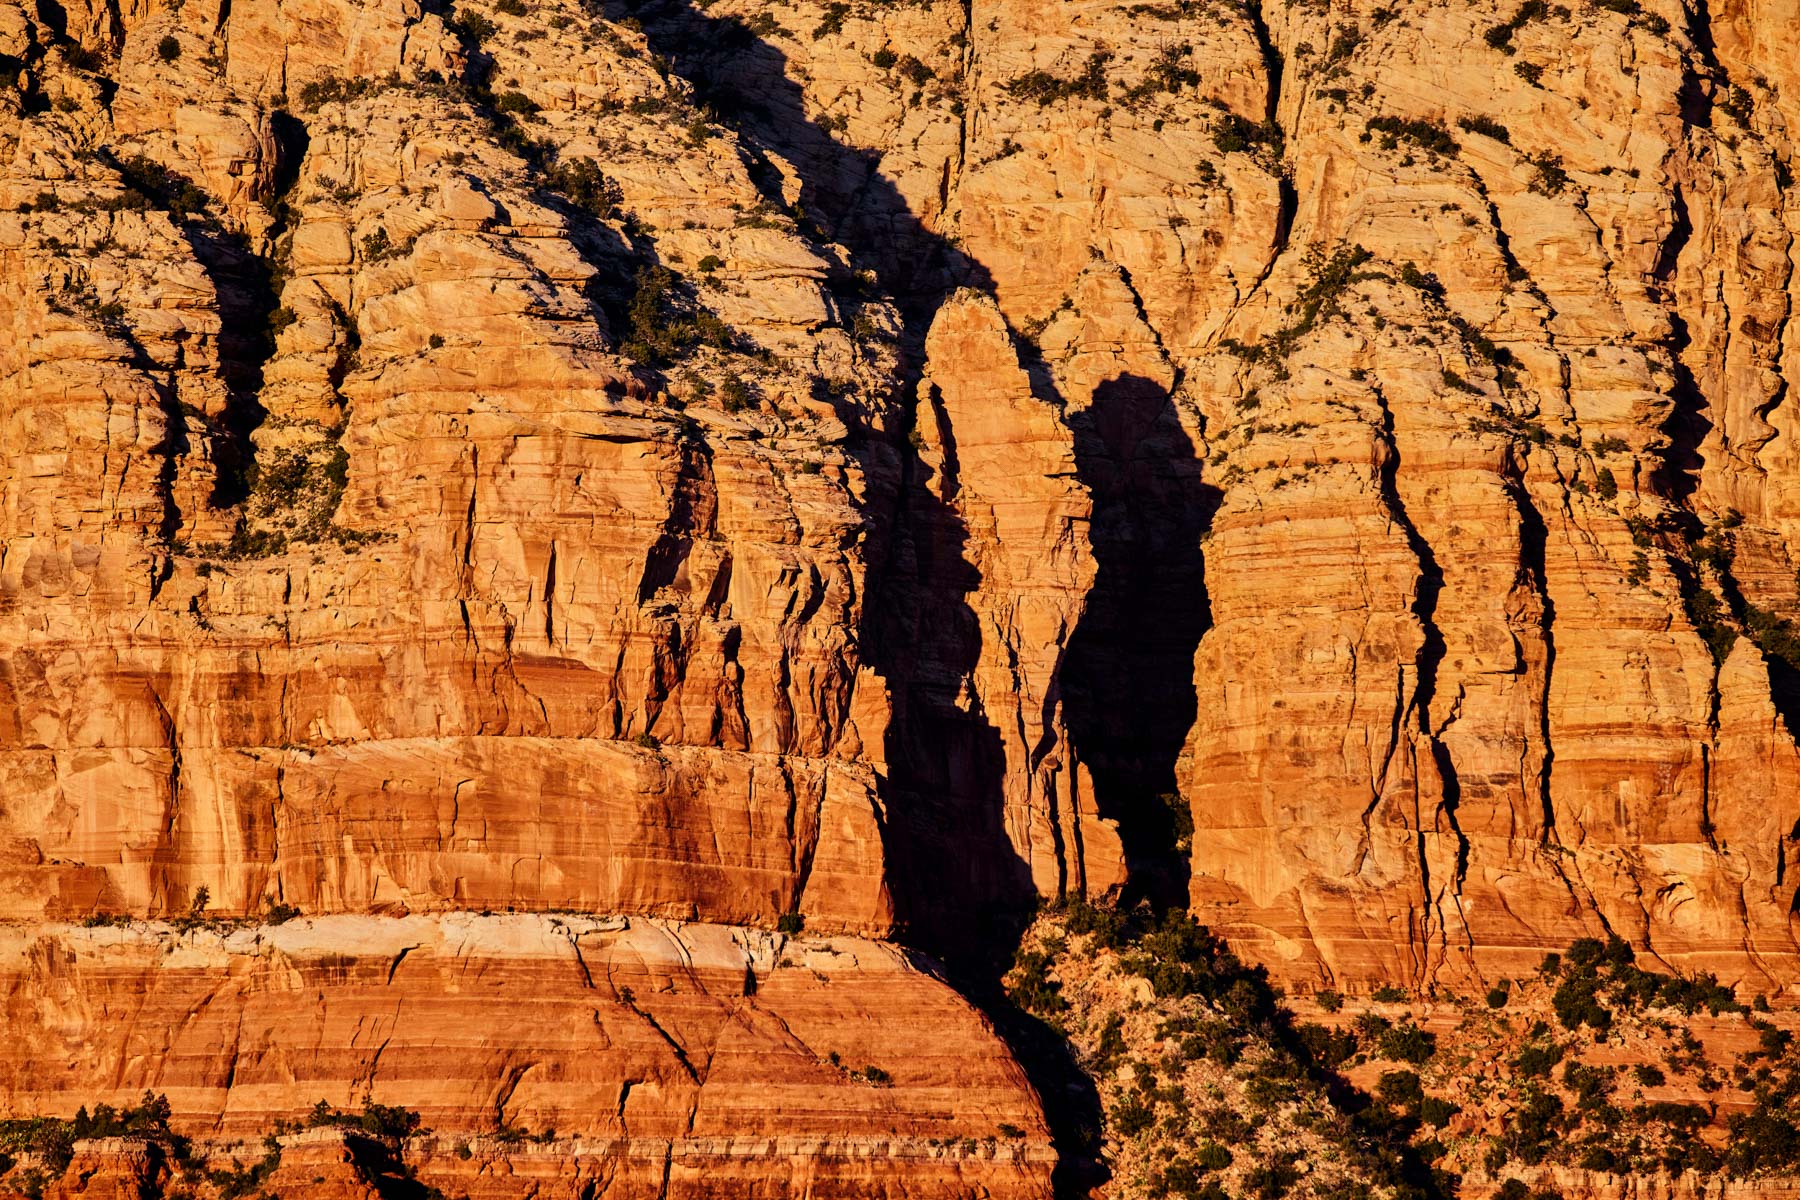 Hard shadows on the wall near Bell Rock, Sedona, Arizona landscape by Andy Batt